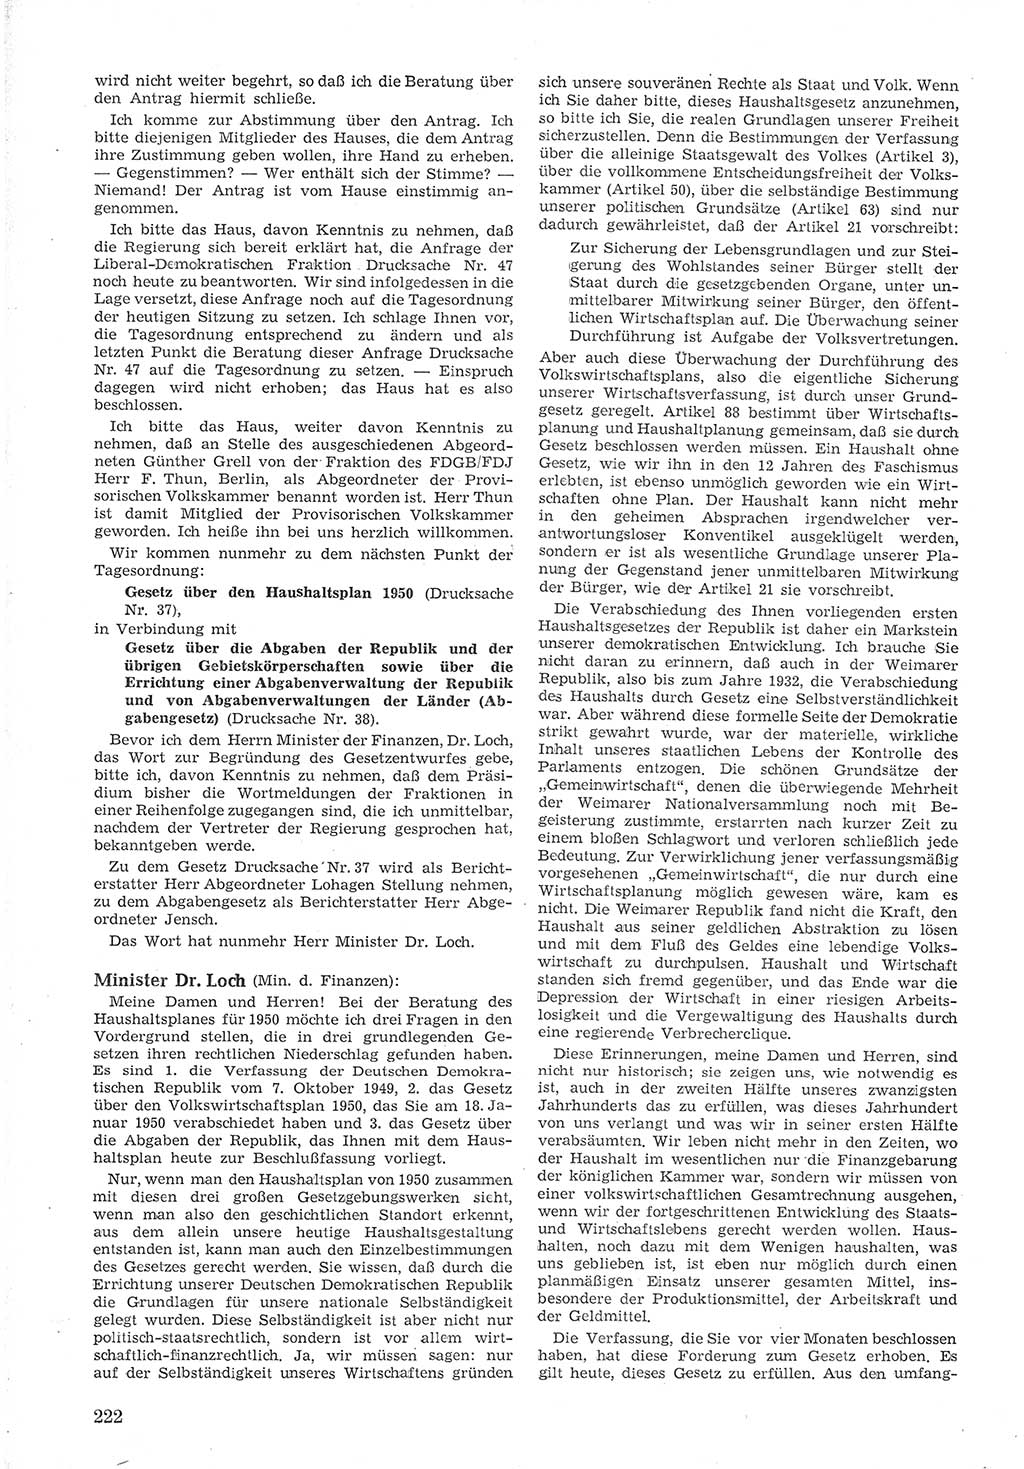 Provisorische Volkskammer (VK) der Deutschen Demokratischen Republik (DDR) 1949-1950, Dokument 236 (Prov. VK DDR 1949-1950, Dok. 236)